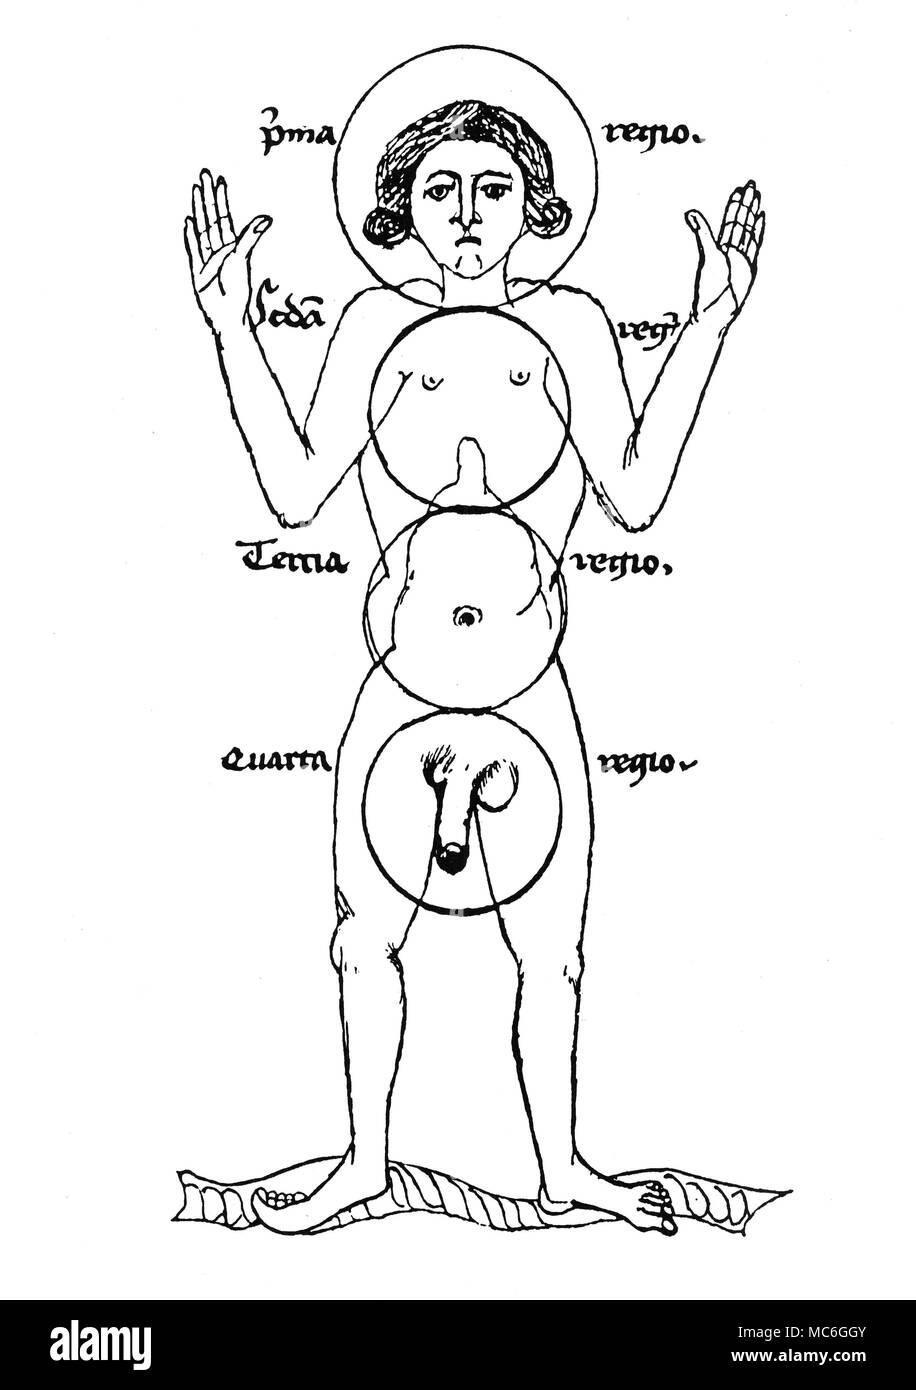 Medizinische mittelalterlichen Zeichnung (Anfang des 15. Jahrhunderts), der die vier "Regionen" des menschlichen Körpers. Die obere (pma - das ist prima), dass ein Teil des Körpers, der animiert. Die zweite (Seda, - das ist, Secunda) ist der Teil des Körpers, die sich auf spirituelle Dinge. Die dritte (terna) ist es, in der Ernährung erfolgt, während die vierte (QUARTA) ist der Teil, der die Macht der Generation enthält. Dieses Diagramm zeigt den Einfluss der Alchemie auf die Mittelalterliche Medizin - die Bereiche der drei Grundsätze der Salz, Schwefel und Quecksilber sind klar definiert. Von "Eine Pariser "Handshfit Ketham' aus der Zeit Stockfoto